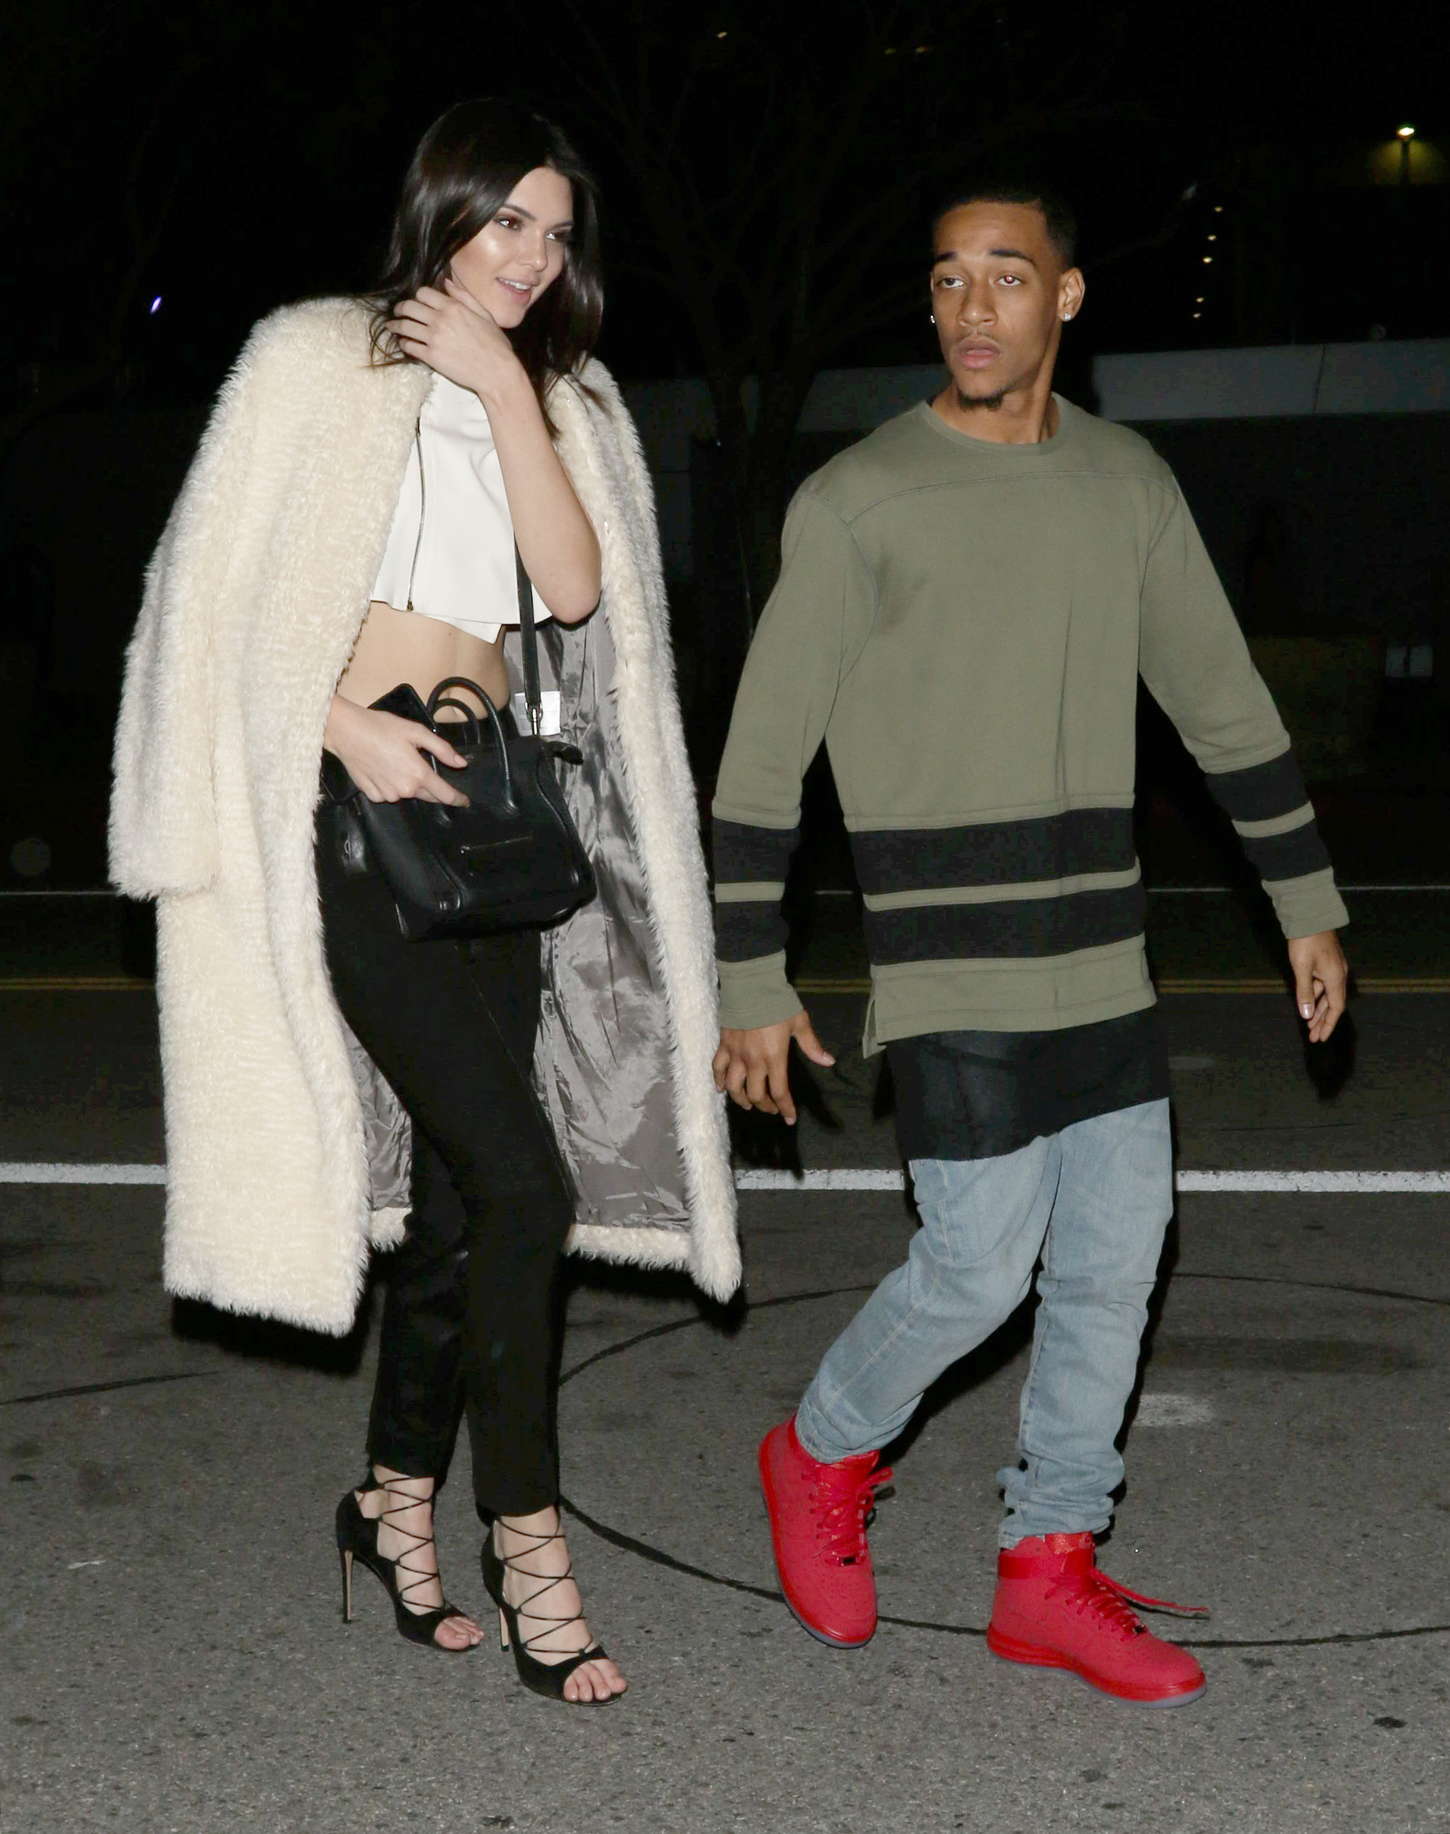 Kendall Jenner leaving The Staples Center